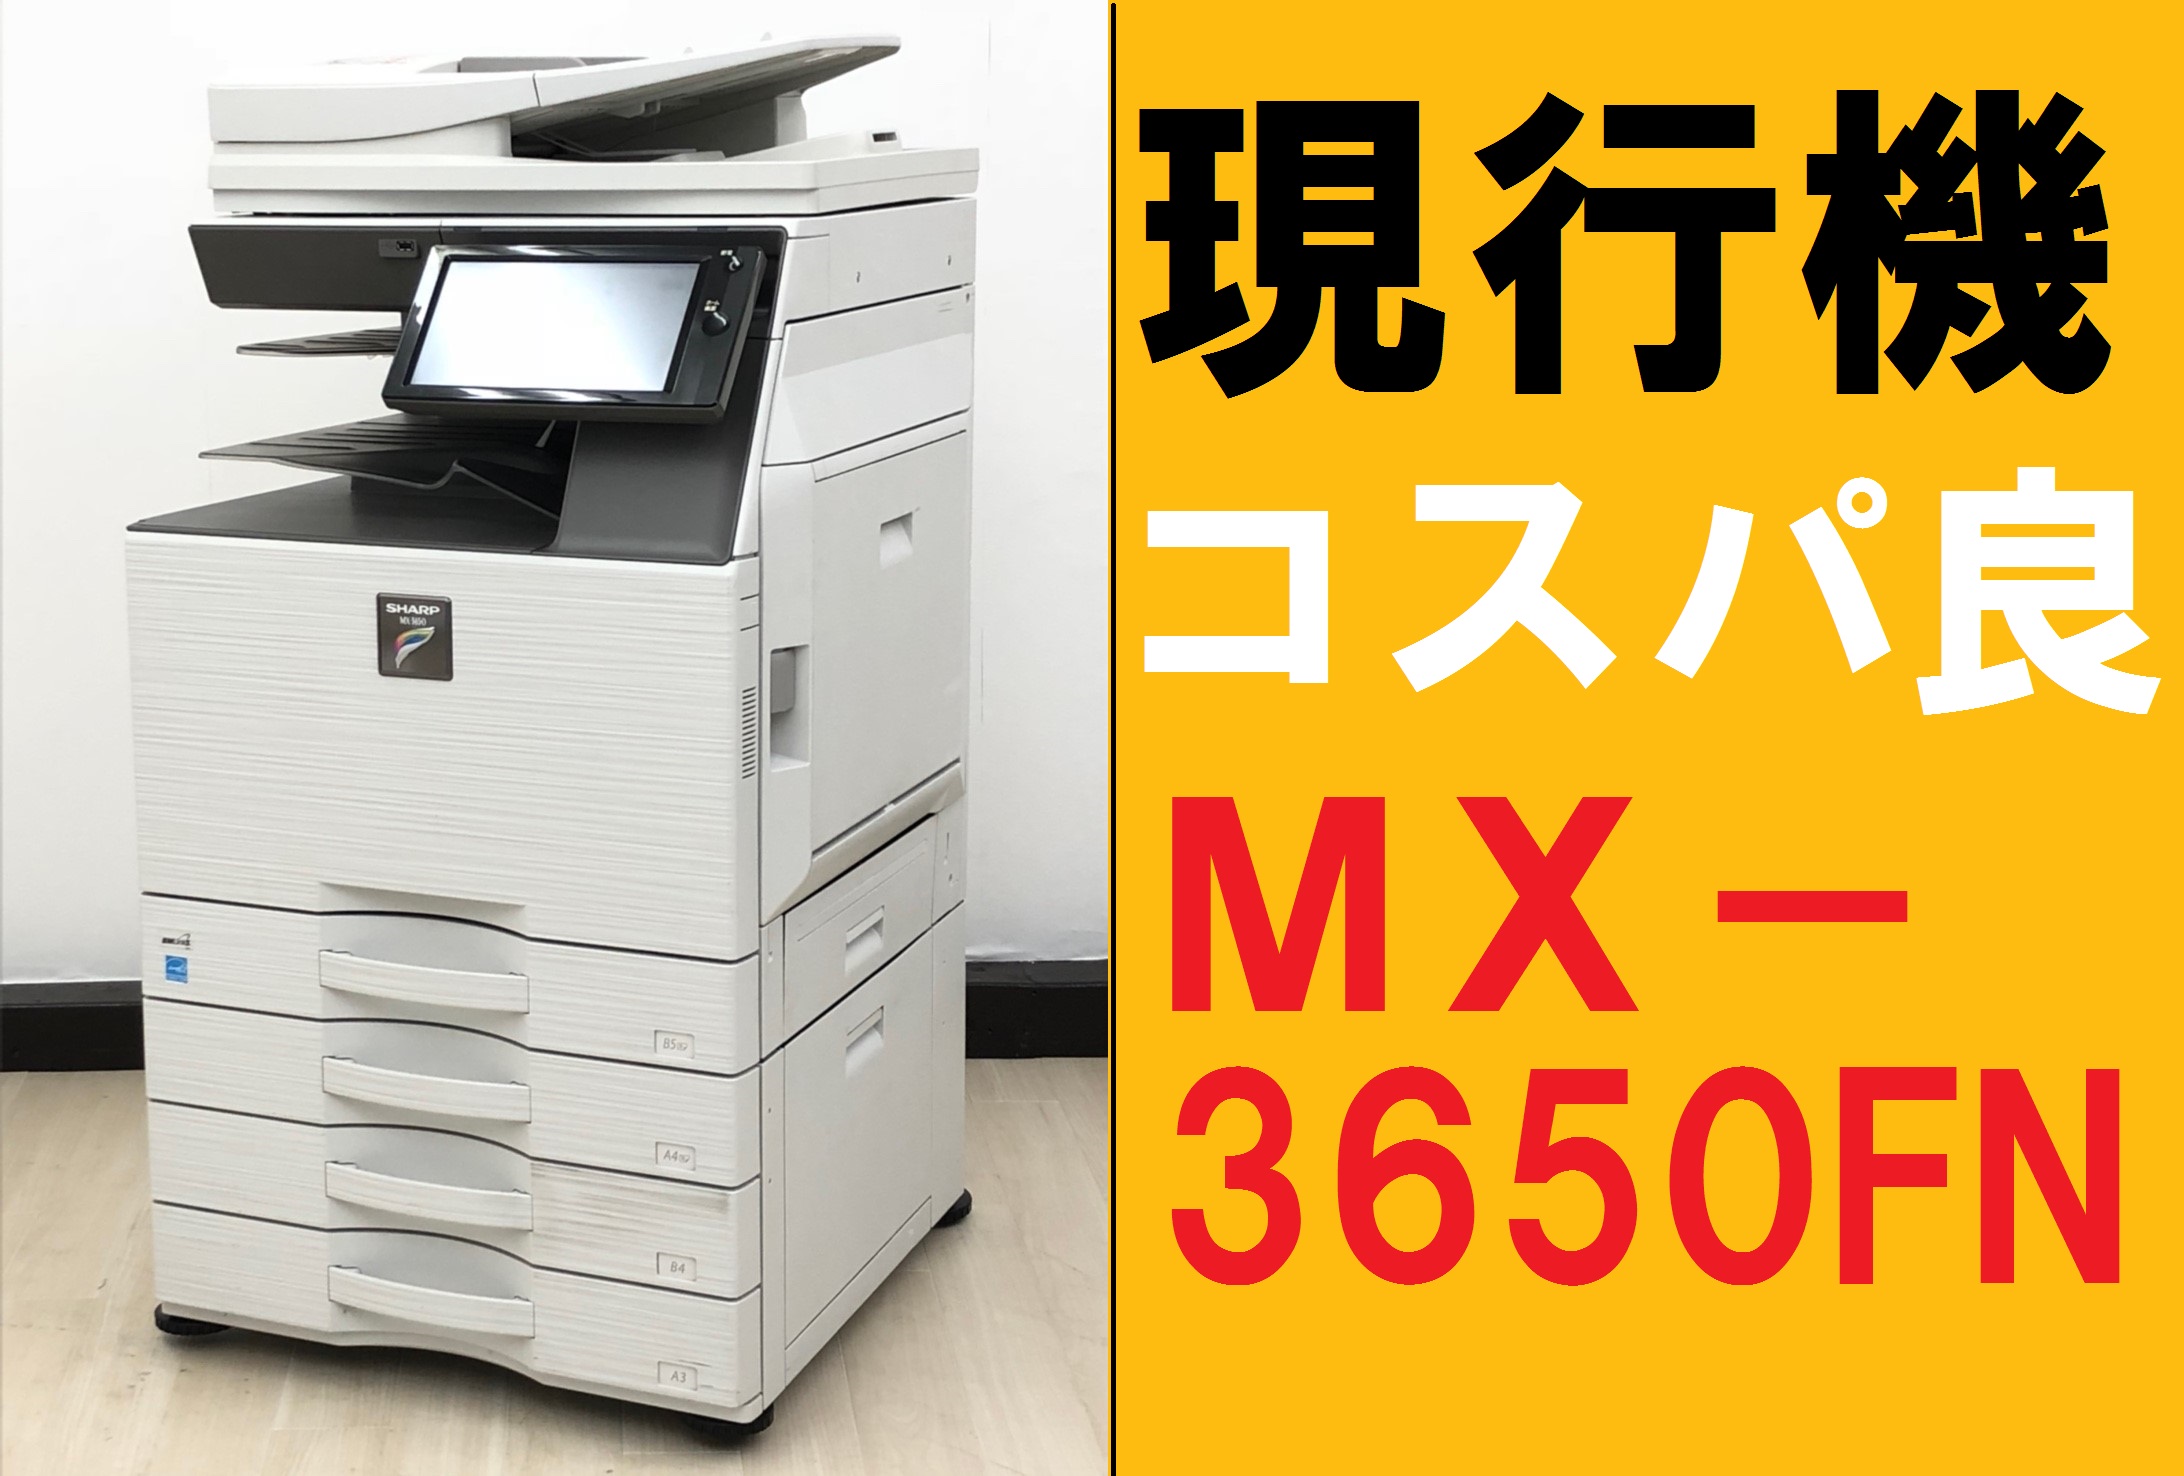 中古MXシリーズ  シャープ/ カラー複合機コピー機